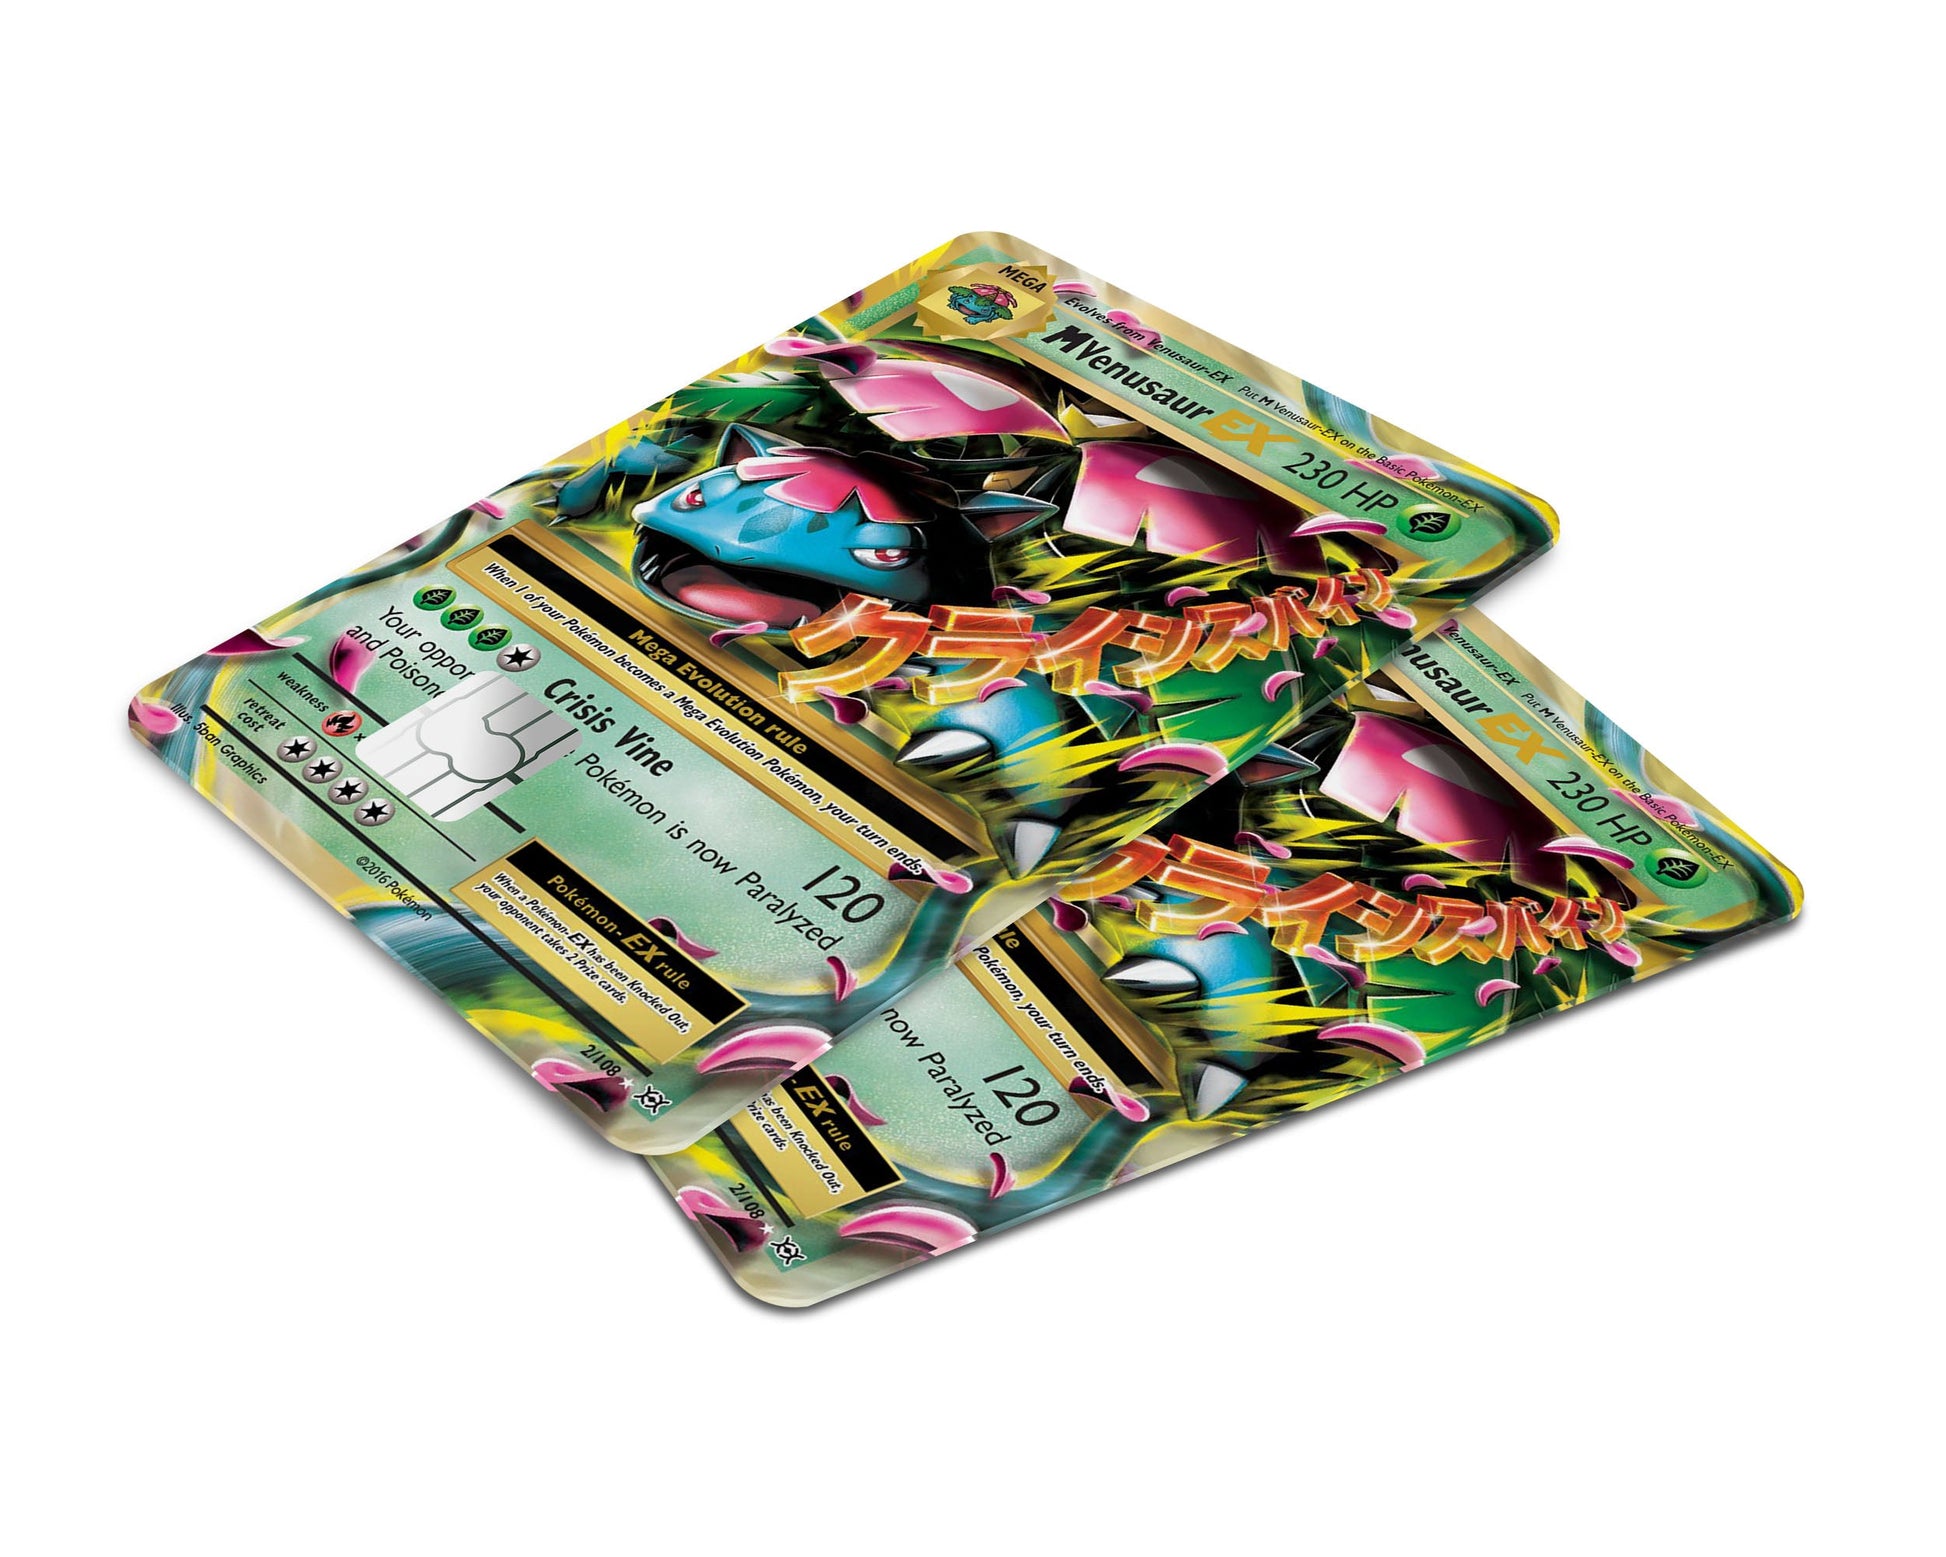 Mega Venusaur Pokemon Card Credit Card Skin